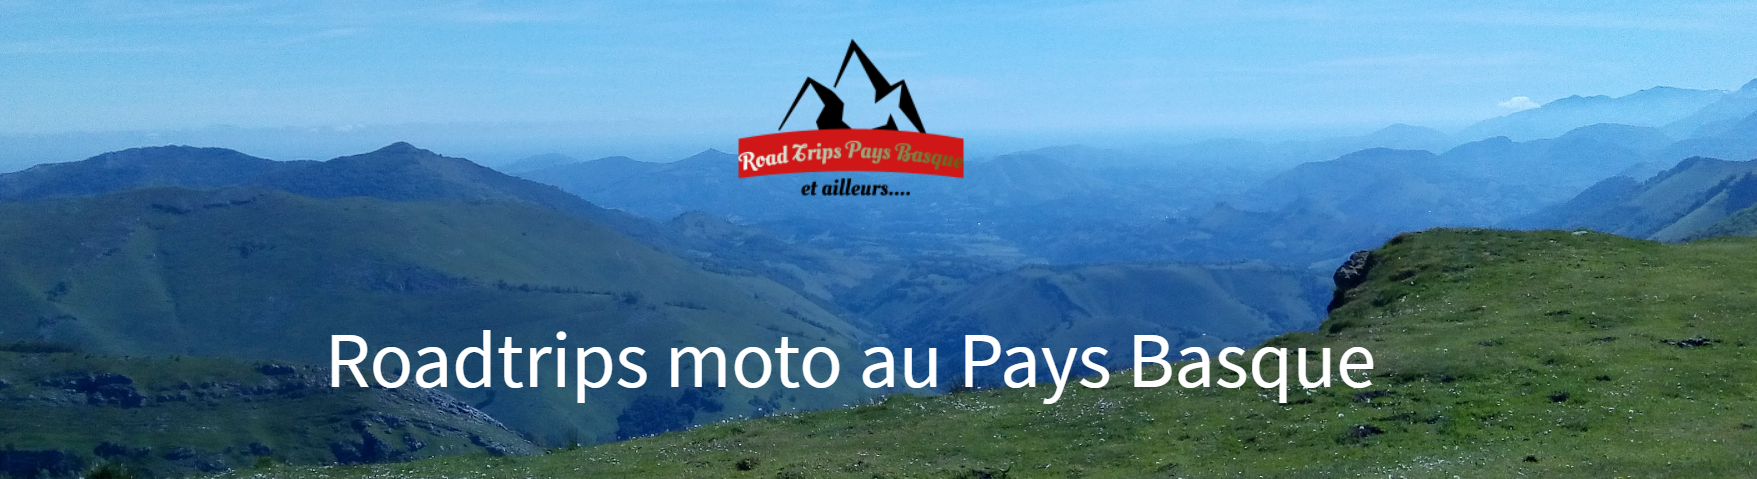 Road trips Moto dans le Pays Basque